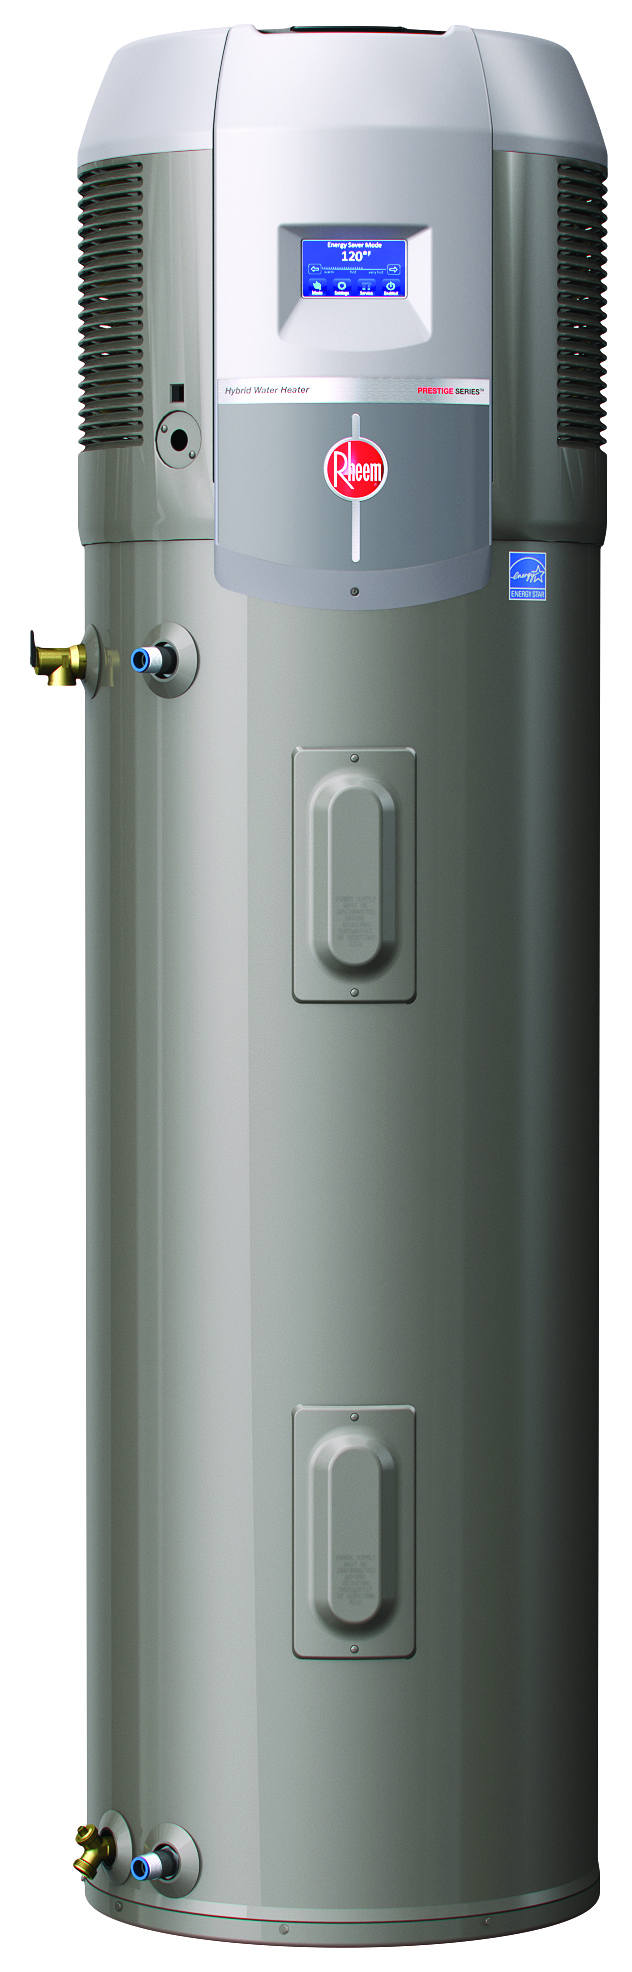 Rheem Debuts the Prestige™ Series Hybrid Electric Heat Pump Water Heater